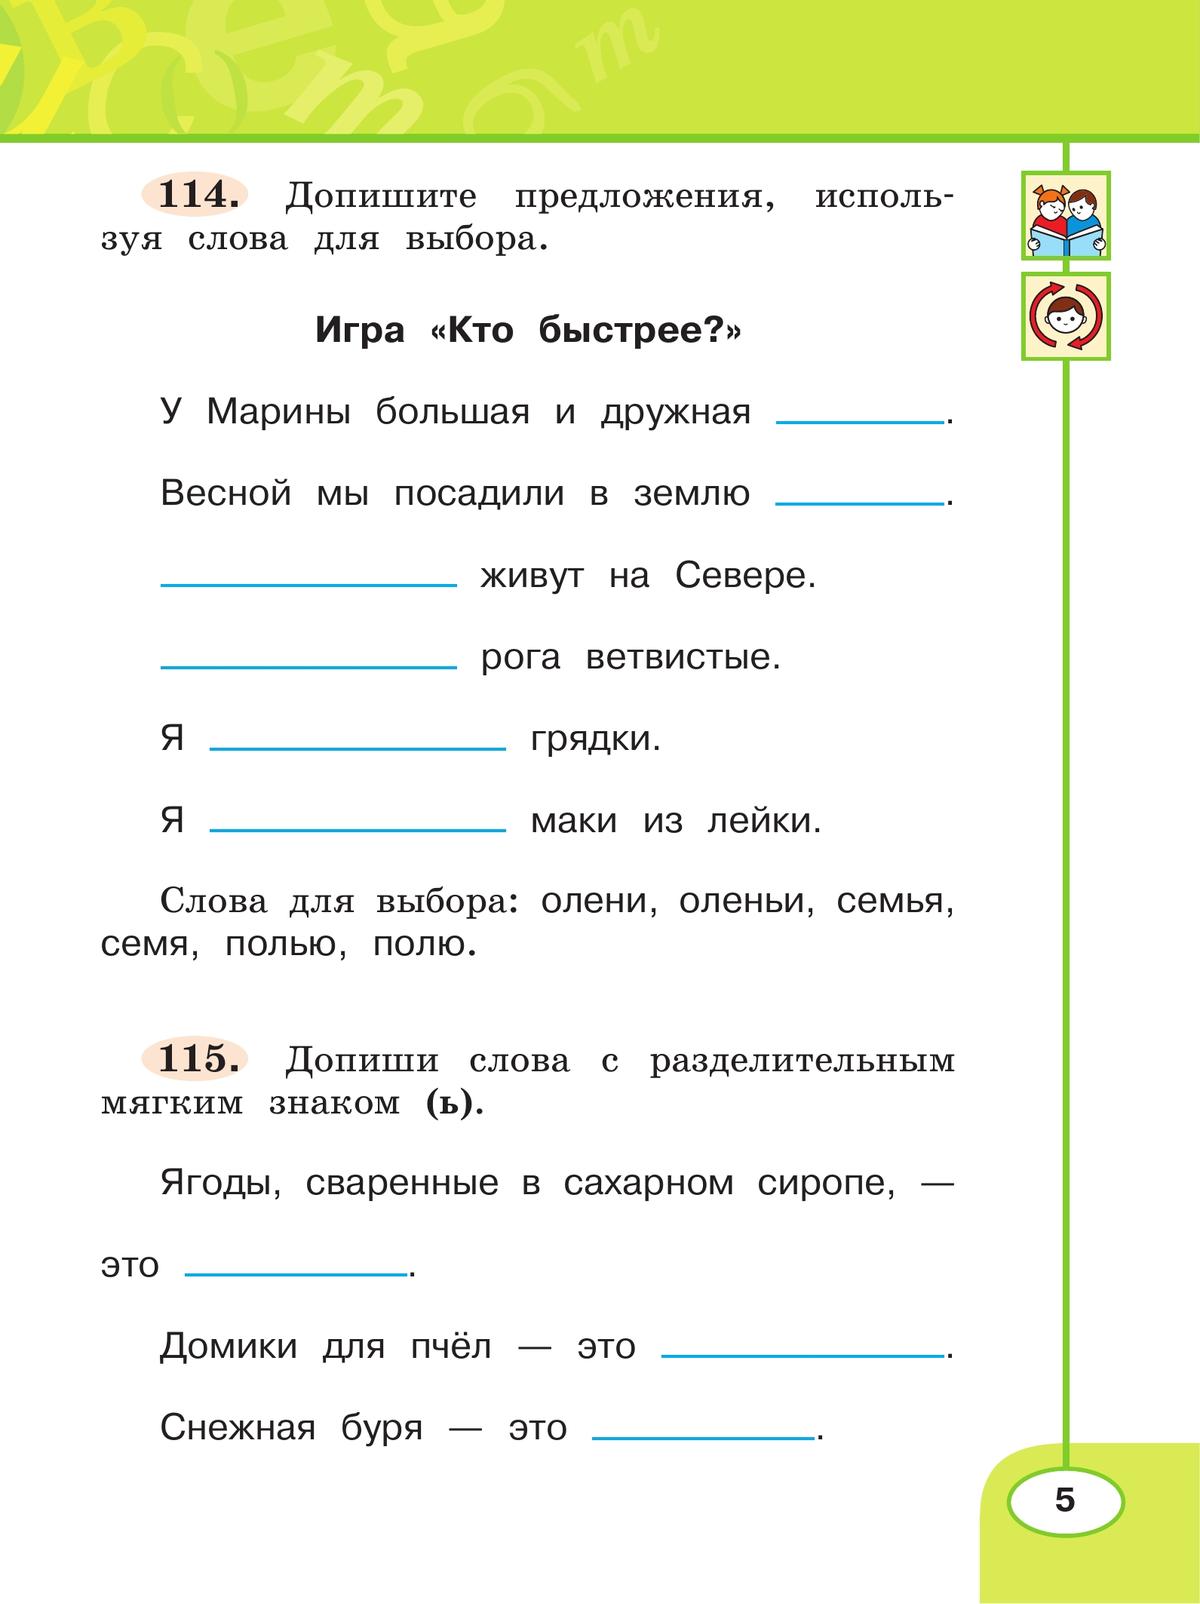 Русский язык. Рабочая тетрадь. 2 класс. В 2 частях. Часть 2 5